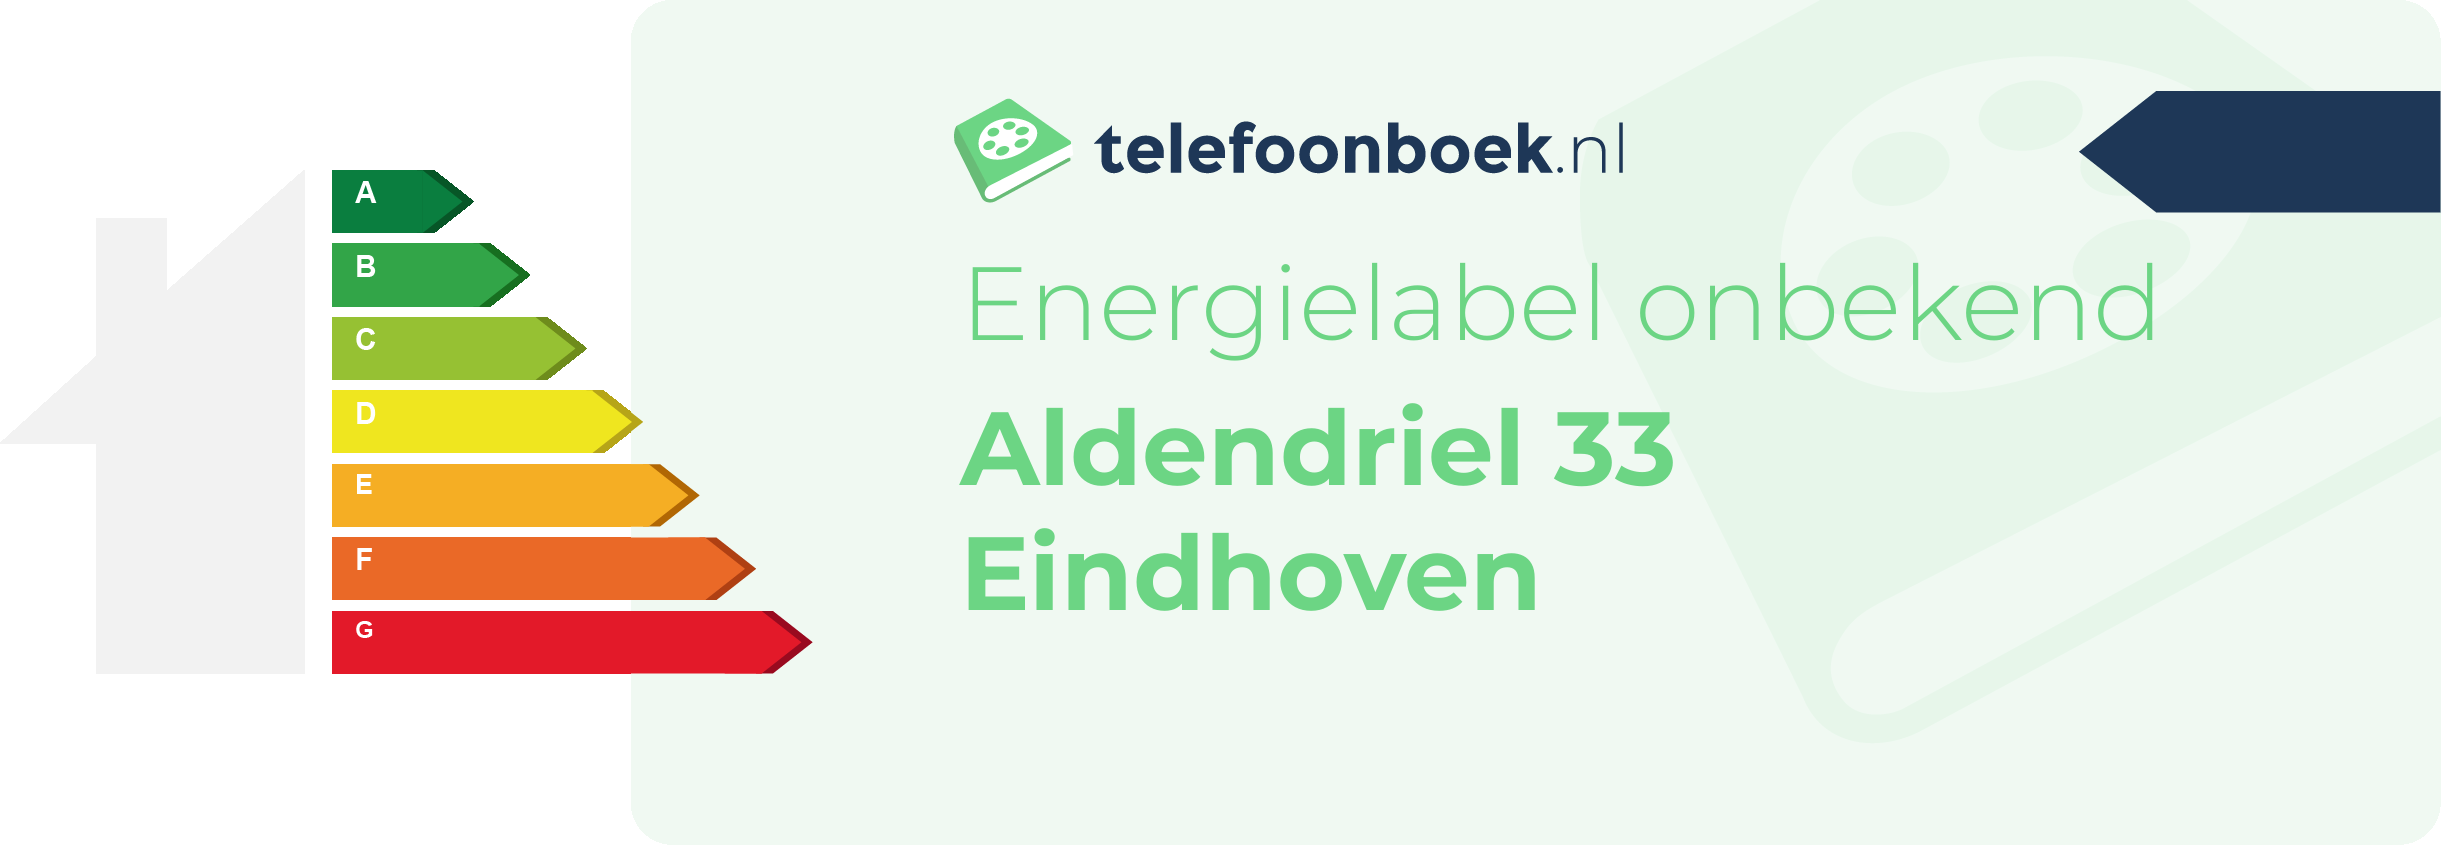 Energielabel Aldendriel 33 Eindhoven